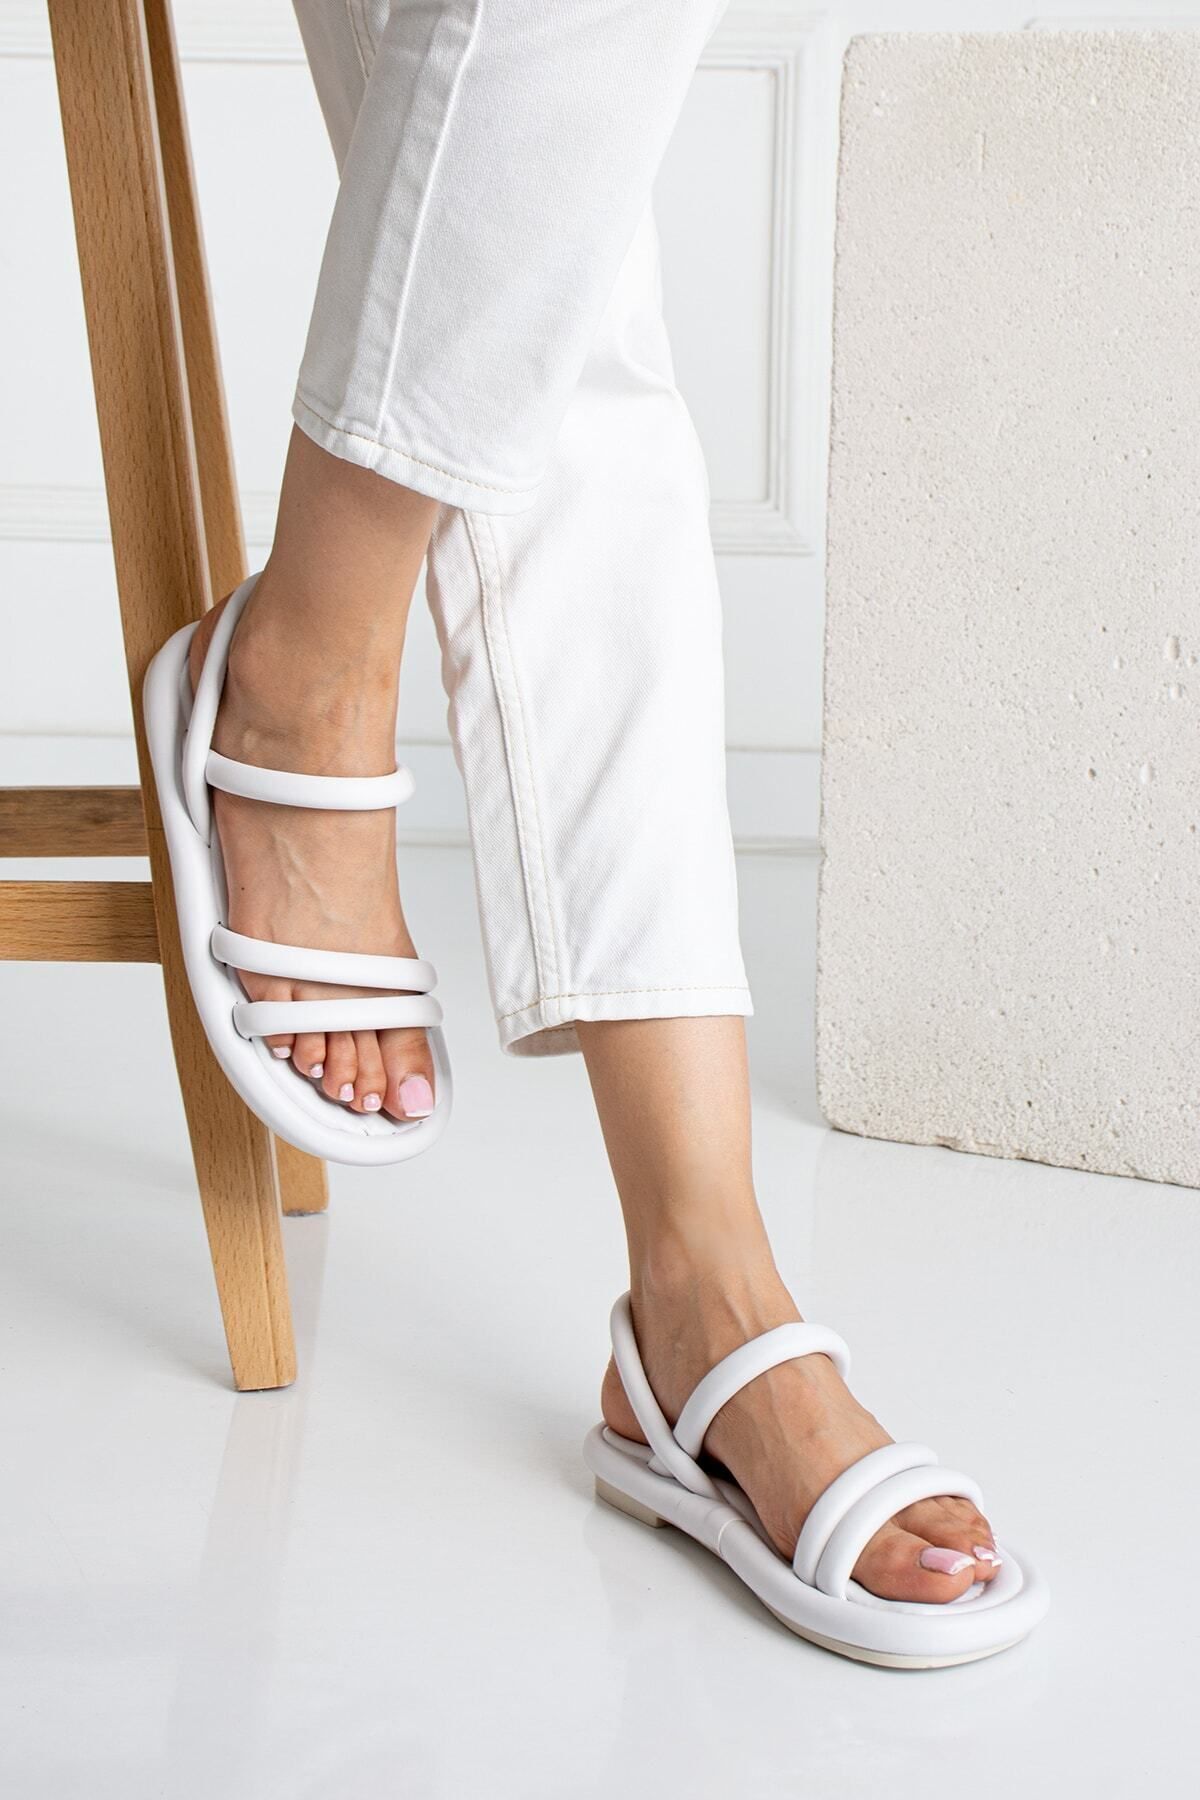 star shoes Beyaz Bantlı Kadın Sandalet